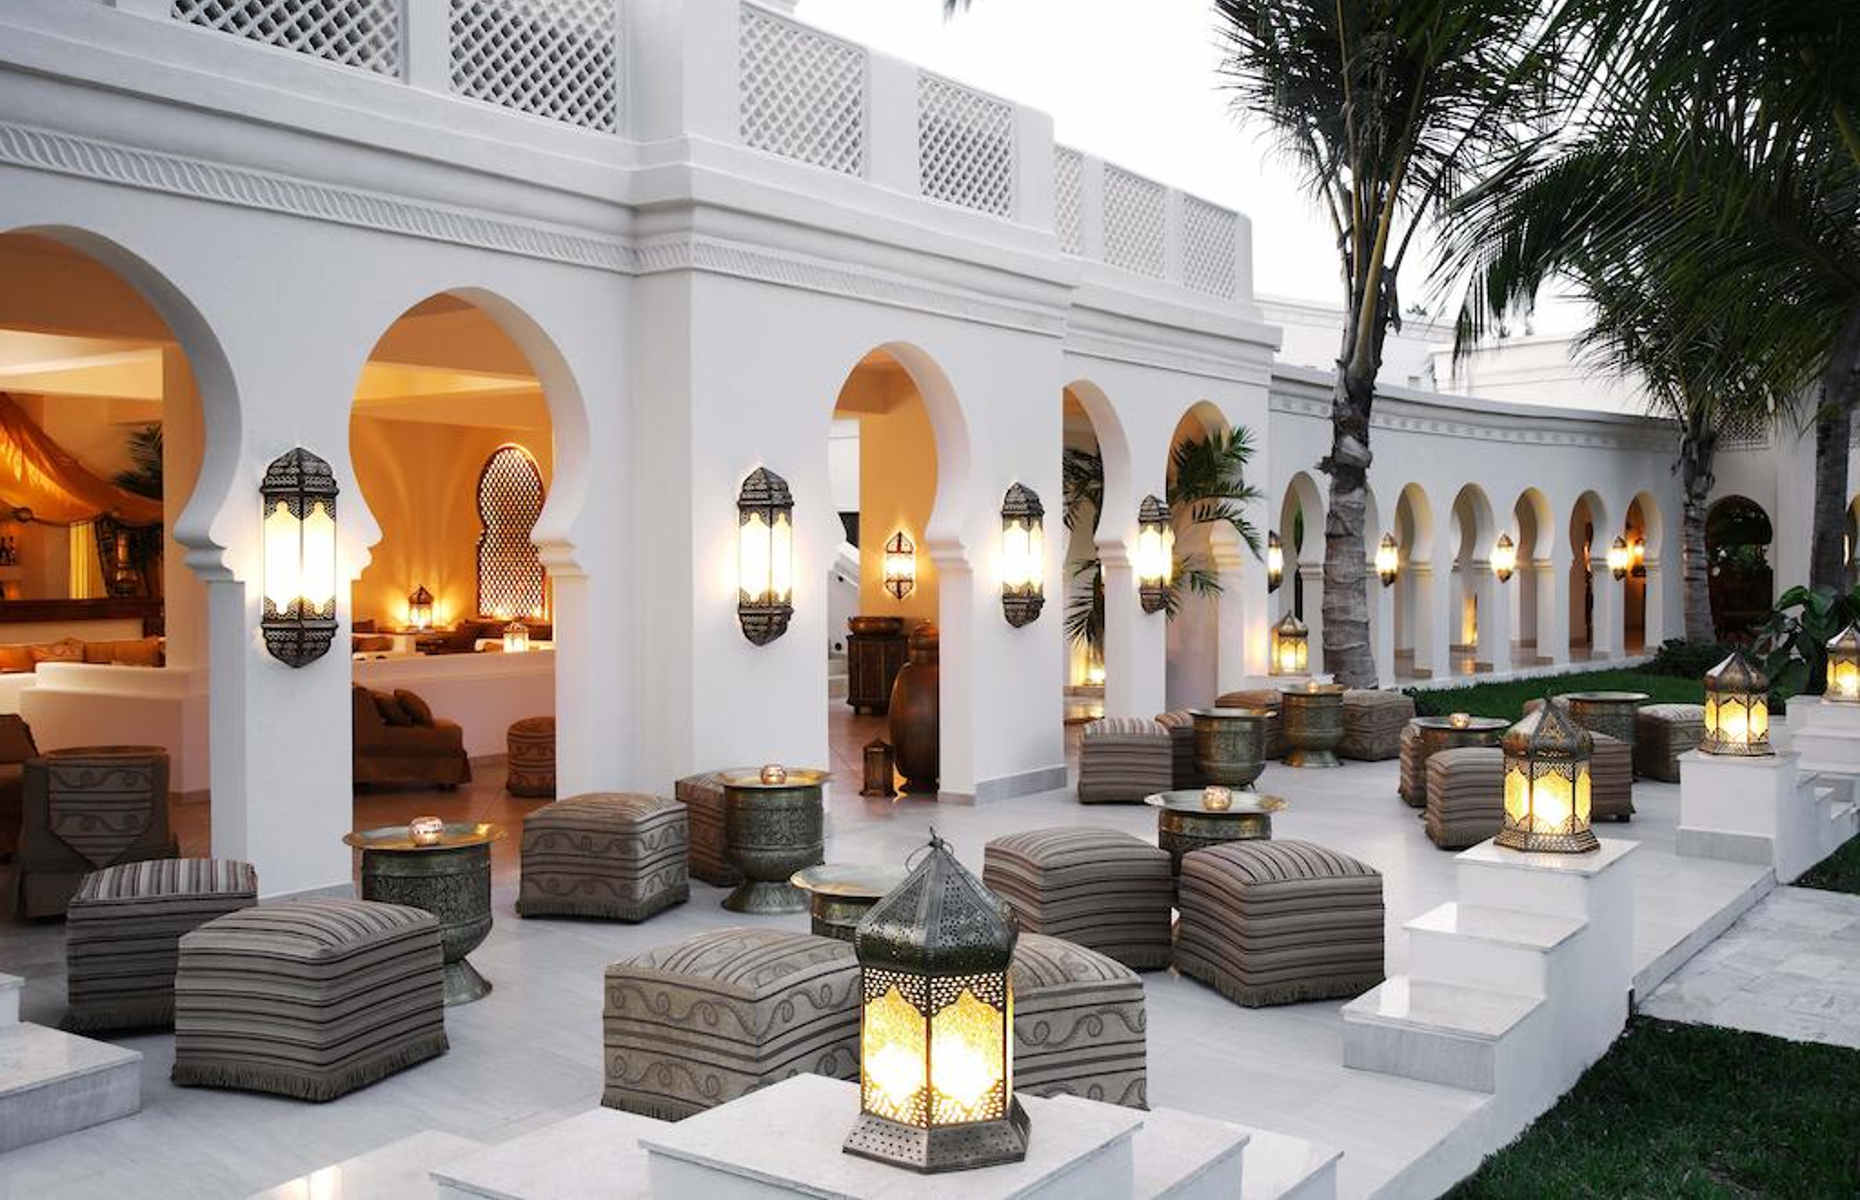 Baraza Resort Spa  Hotel luxe Zanzibar S  jour Tanzanie Oc  an